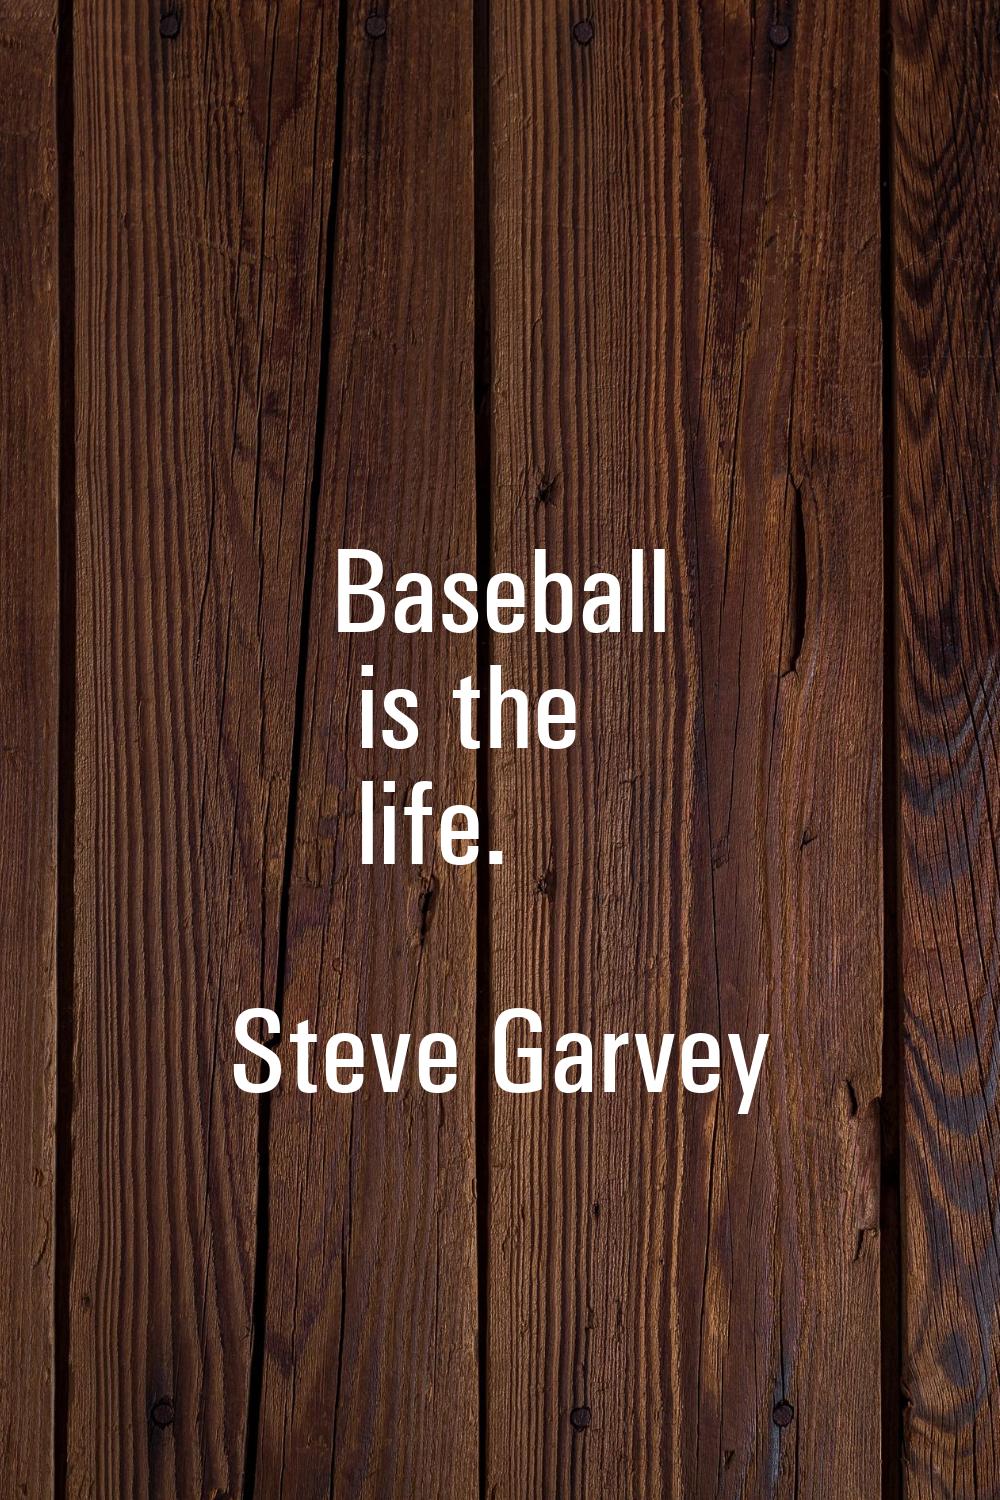 Baseball is the life.